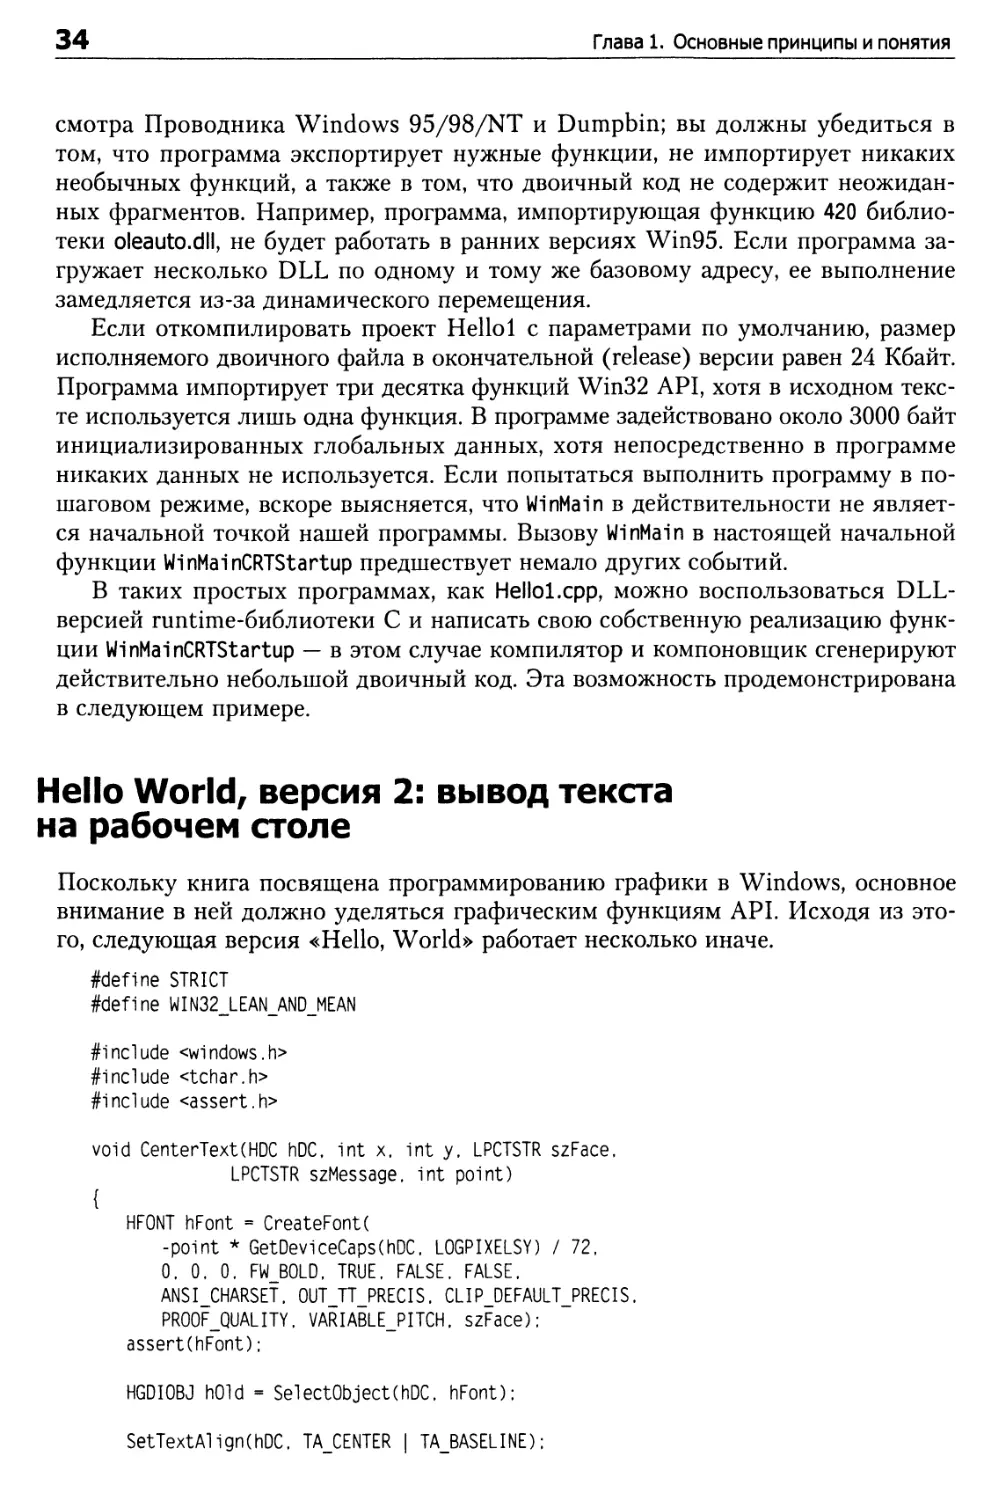 Hello World, версия 2: вывод текста на рабочем столе